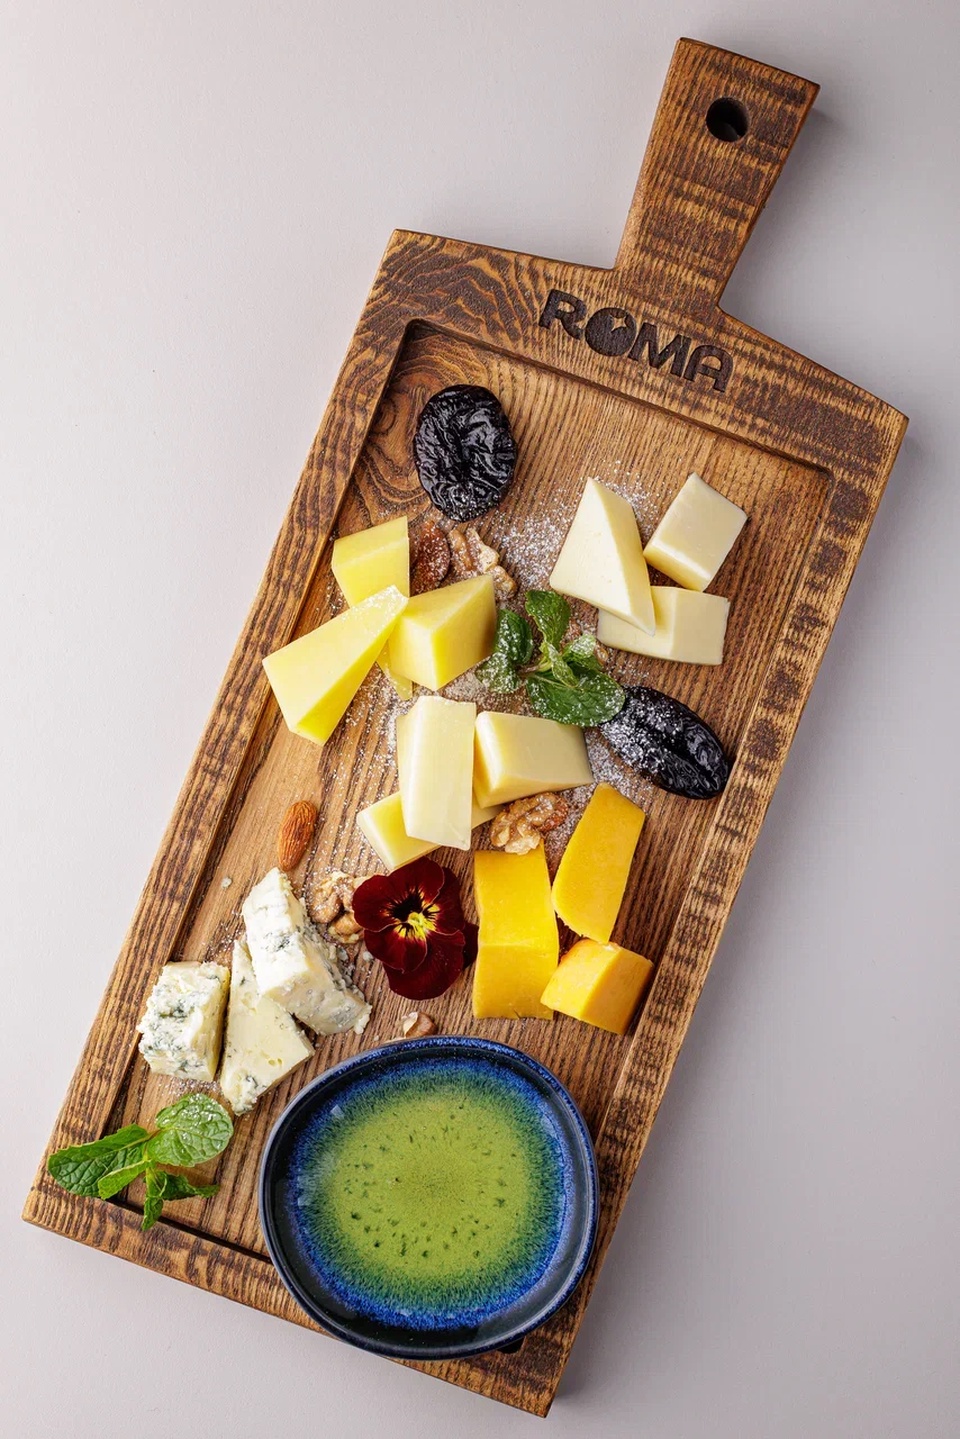 Формаджио из 5 видов сыров - 1 150 ₽, заказать онлайн.